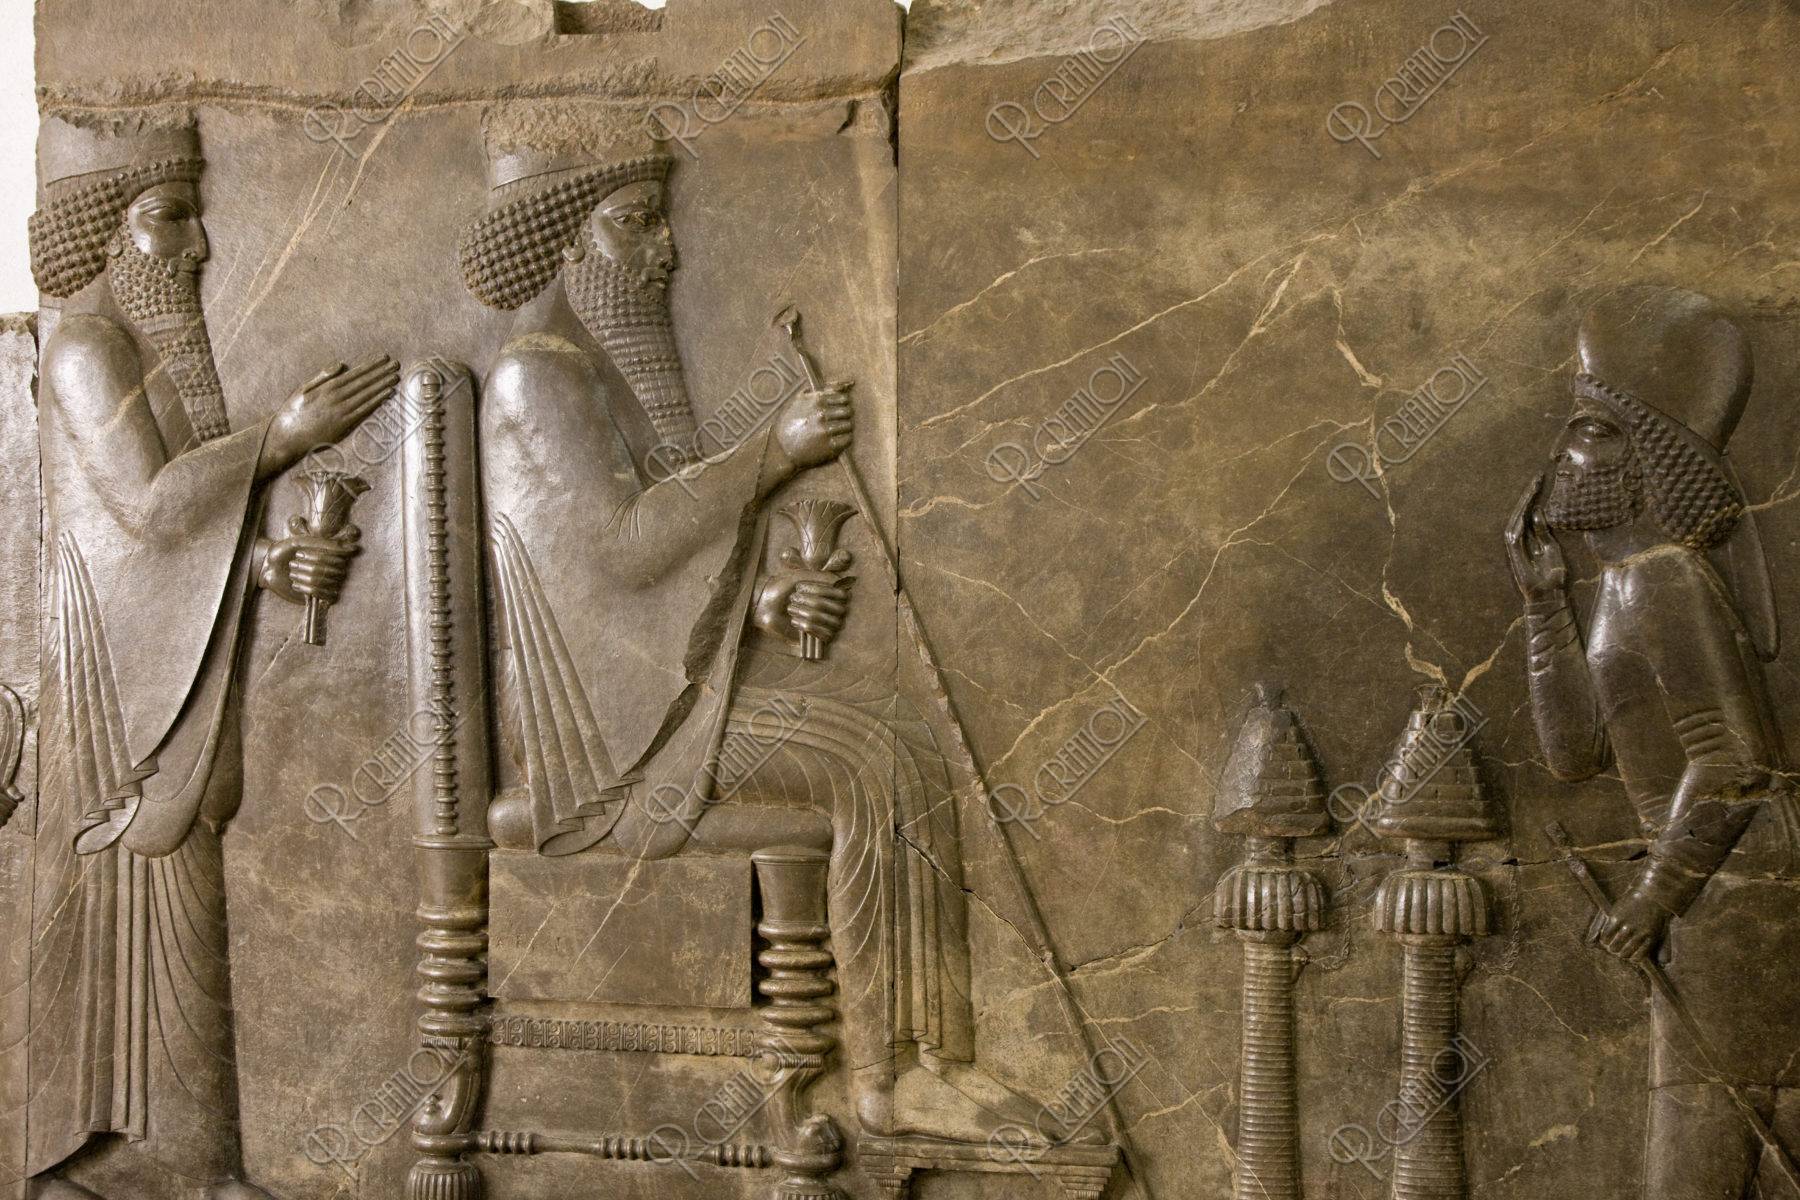 イラン考古学博物館 ダレイオス1世の謁見図 ストックフォト アールクリエーション